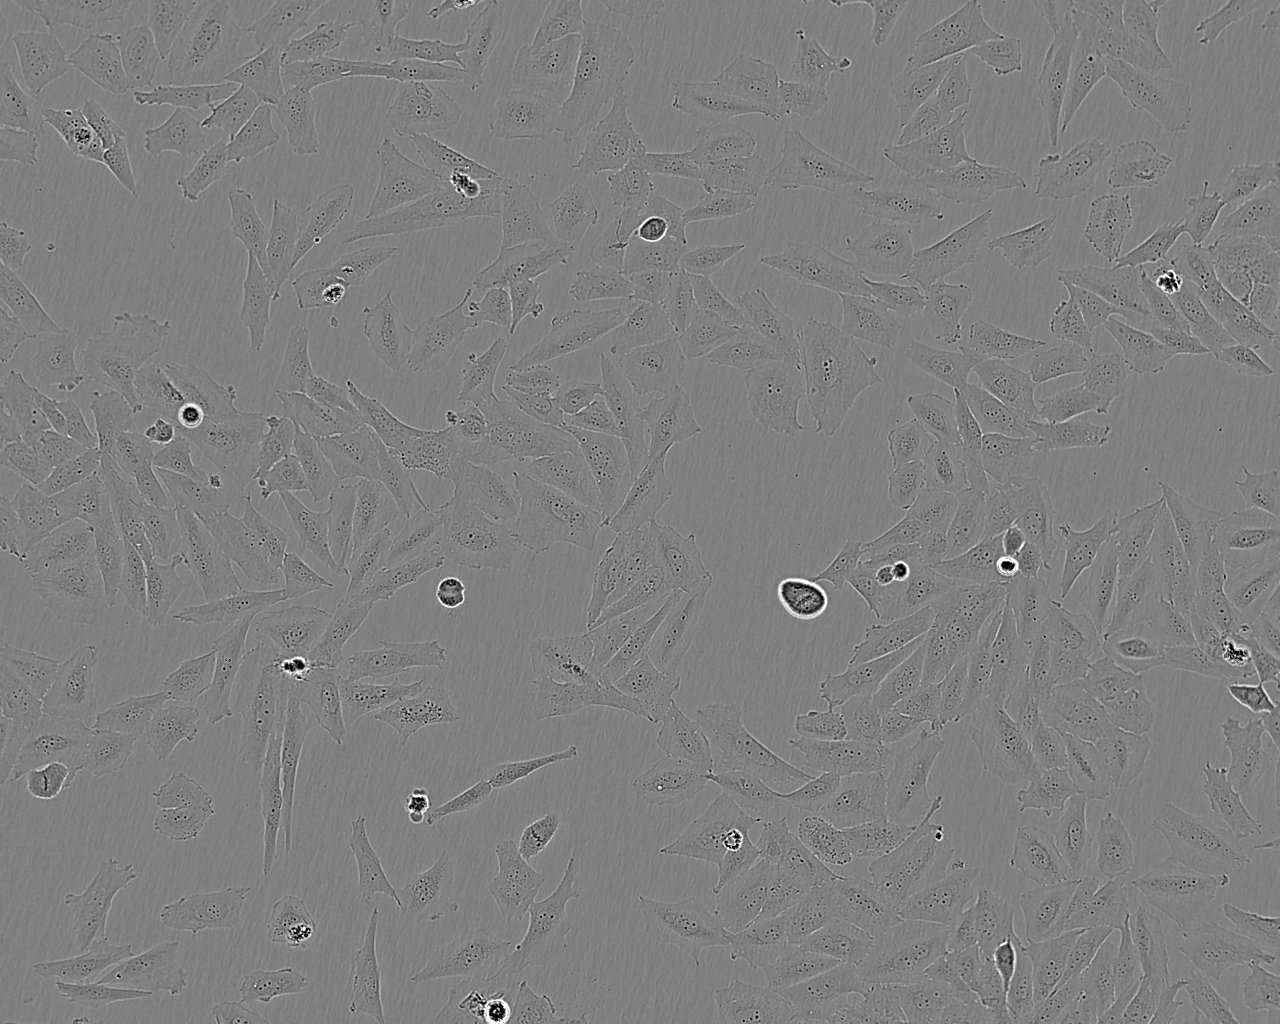 NCI-H522 epithelioid cells人肺癌细胞系,NCI-H522 epithelioid cells